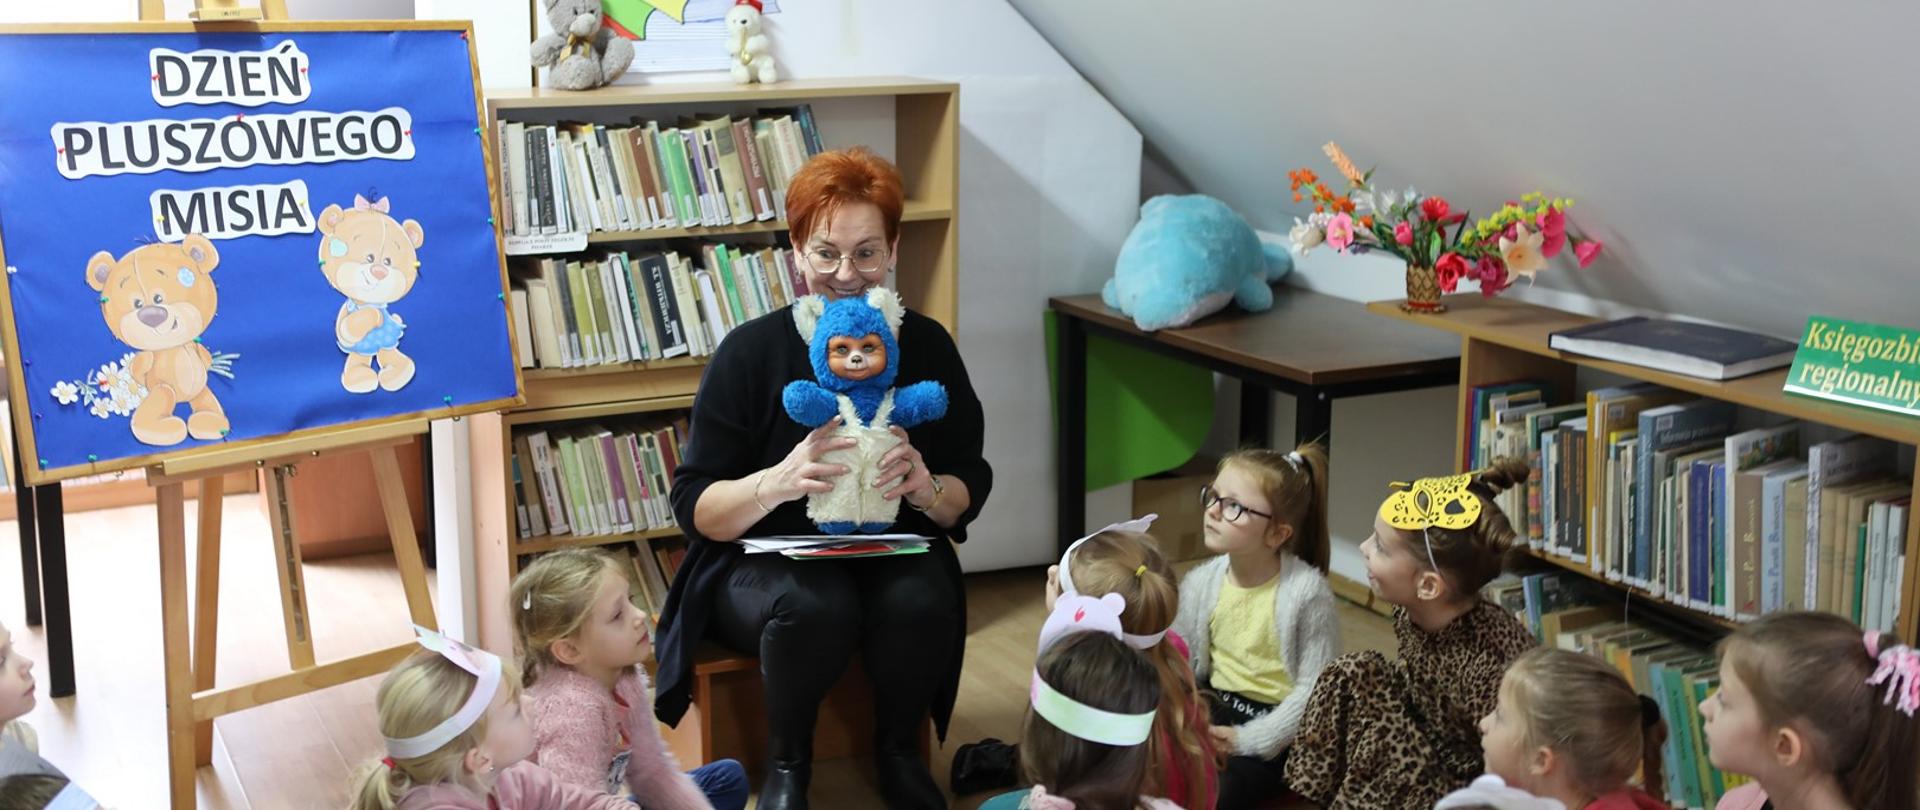 Pani bibliotekarka trzymająca w rękach maskotkę, przed nią na podłodze siedzi gromadka dzieci.